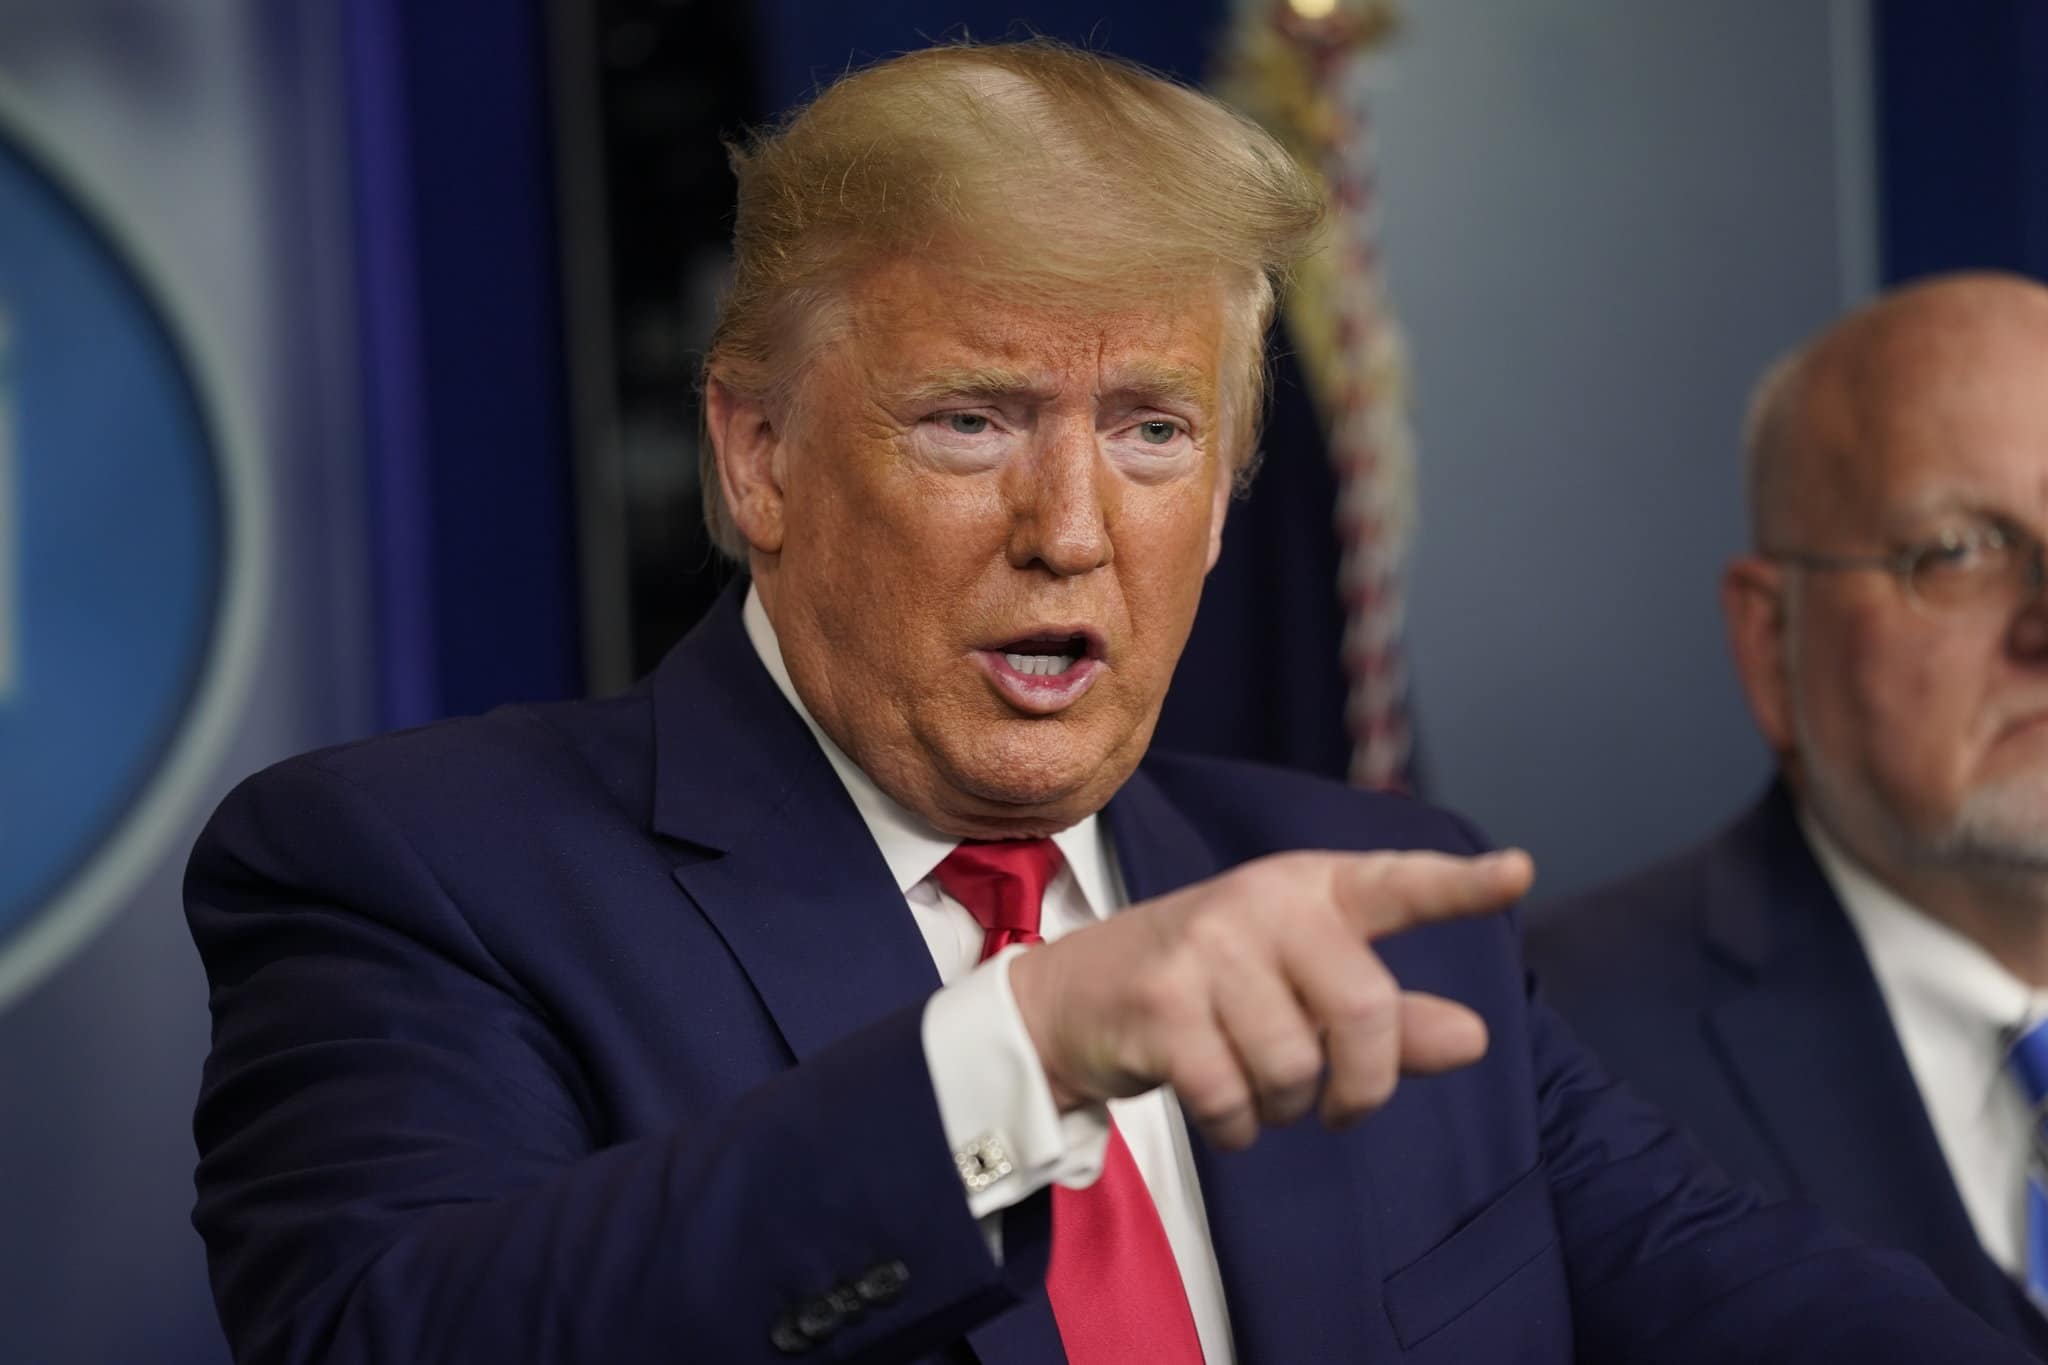 Trump dice que hay “cero riesgo” de que le destituya su gabinete